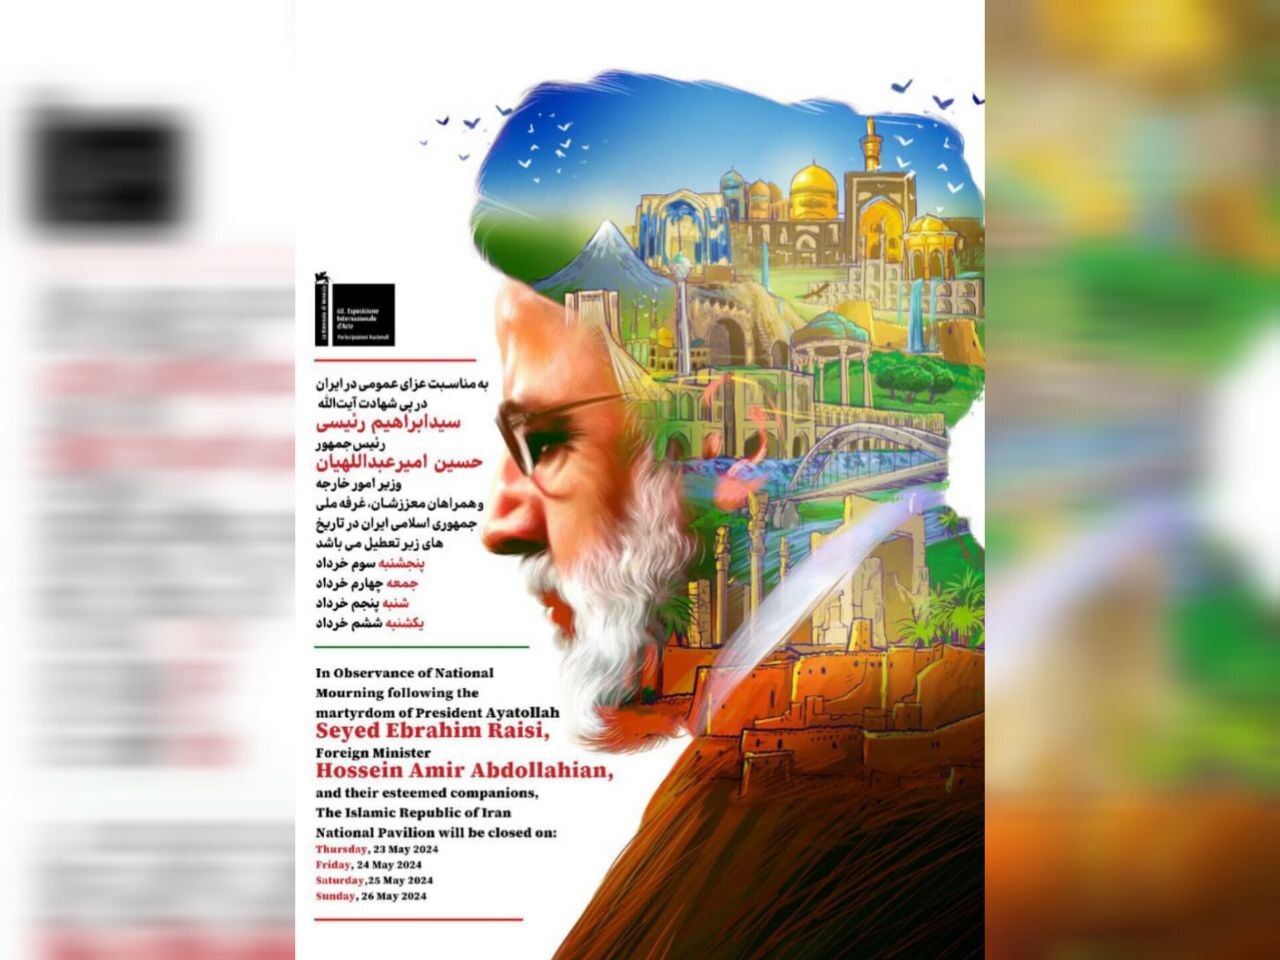 بازگشایی پاویون رسمی ایران در دوسالانه هنر ونیز 2024 پس از چهار روز تعطیلی به احترام شهدای خدمت